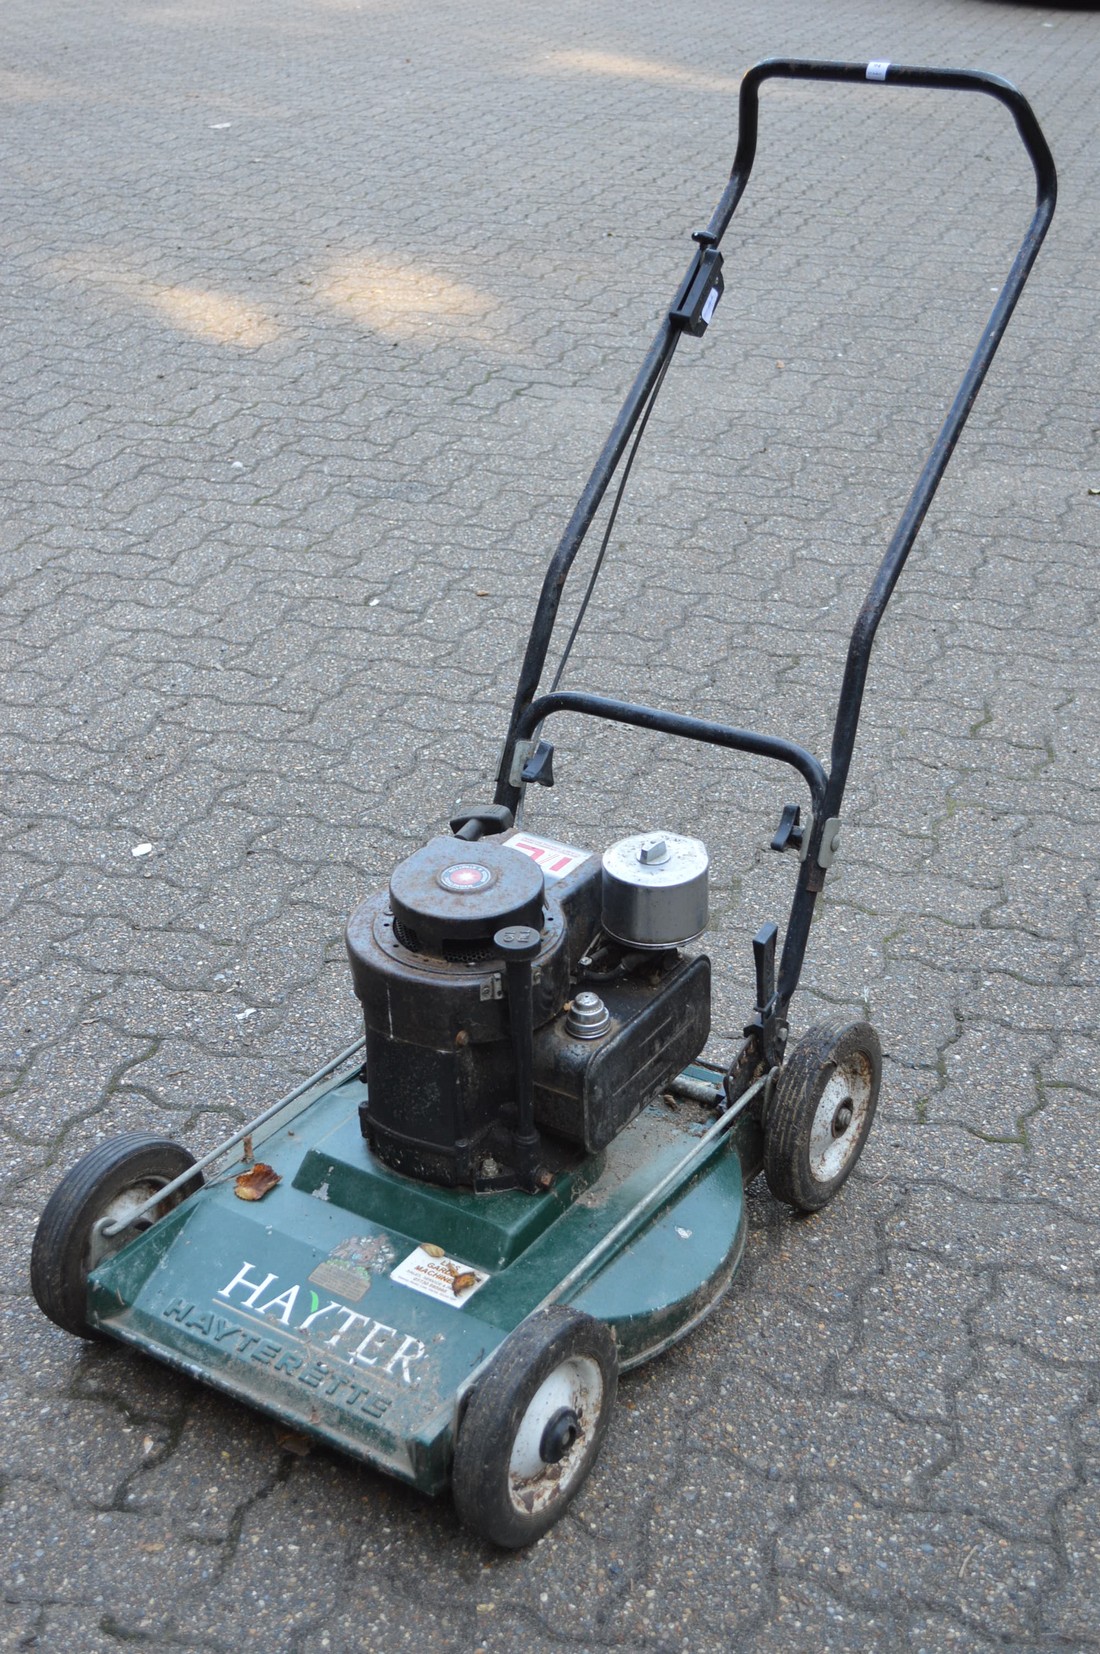 A Hayter Hayterette petrol rotary lawn mower.